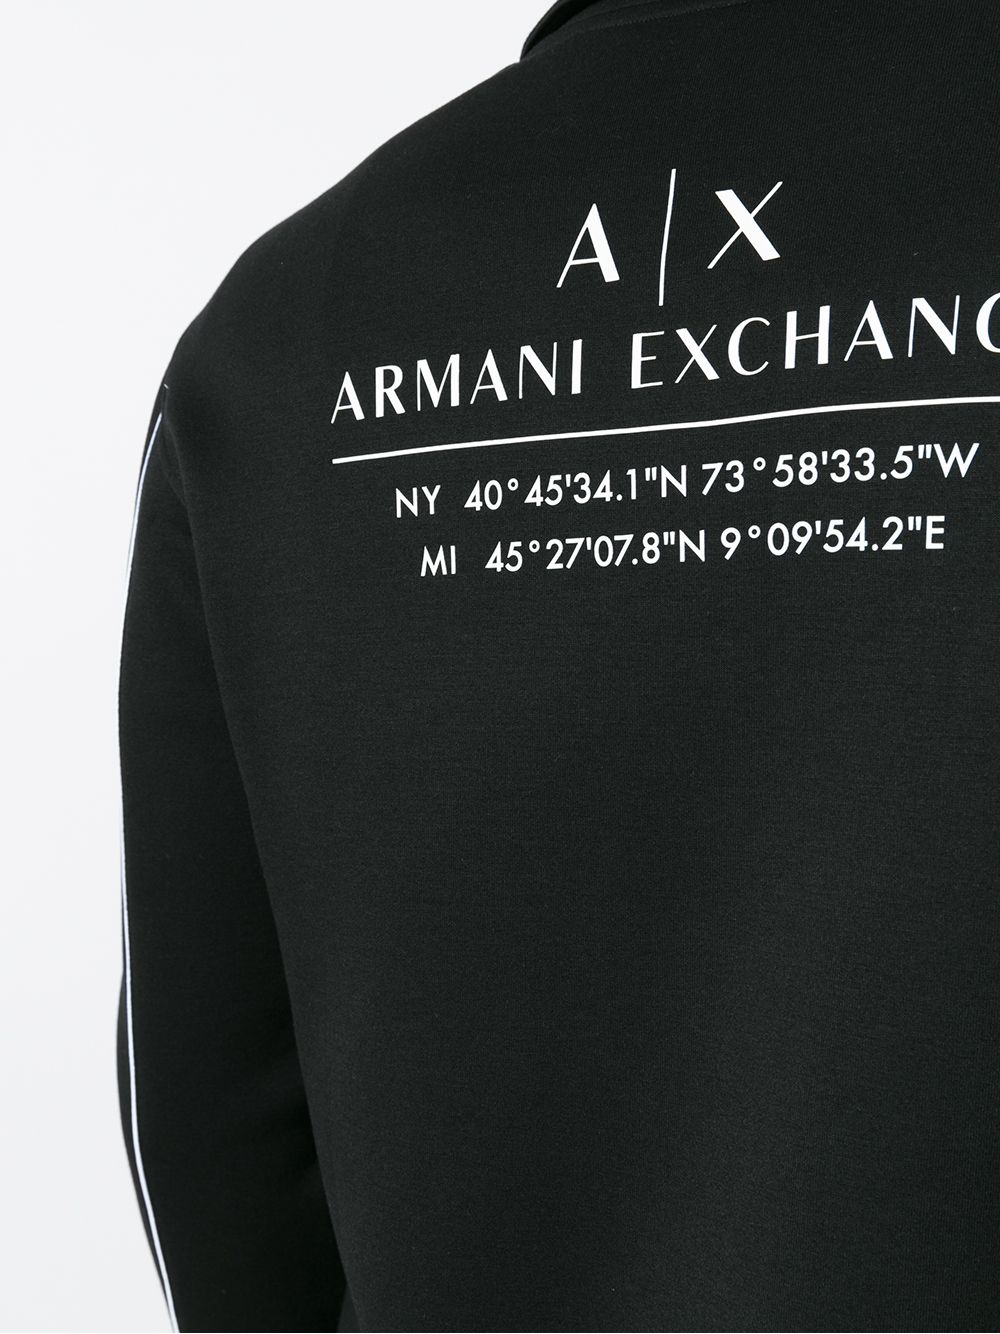 фото Armani exchange куртка с логотипом